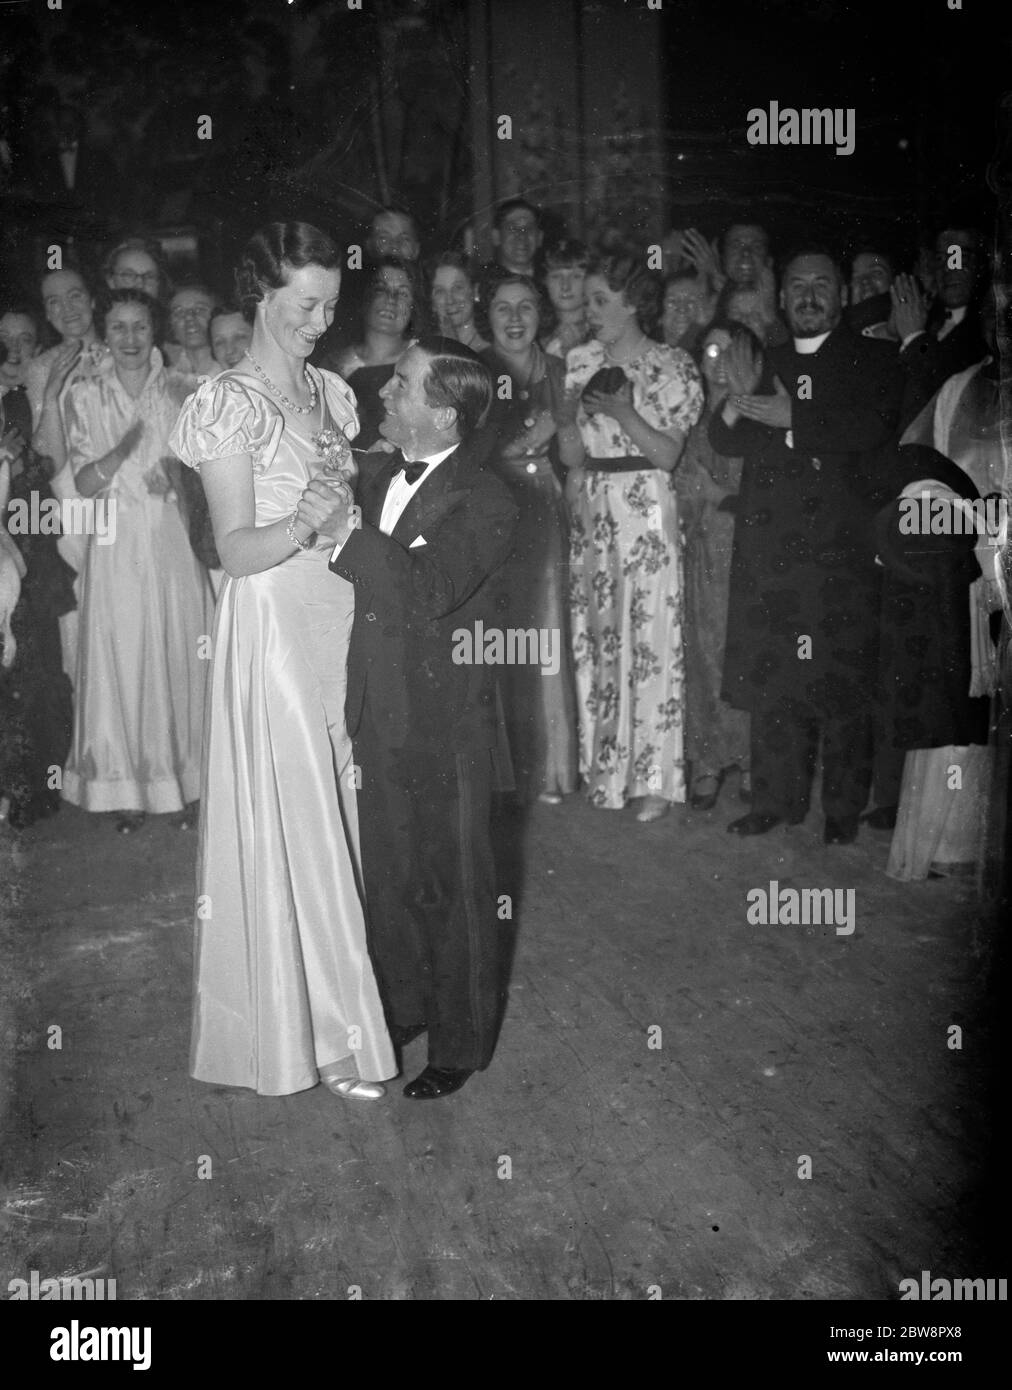 El jockey campeón retirado, Steve Donoghue y una joven lideran el primer baile en la apertura de Carlton Hall, Erith, Kent. 1937 Foto de stock